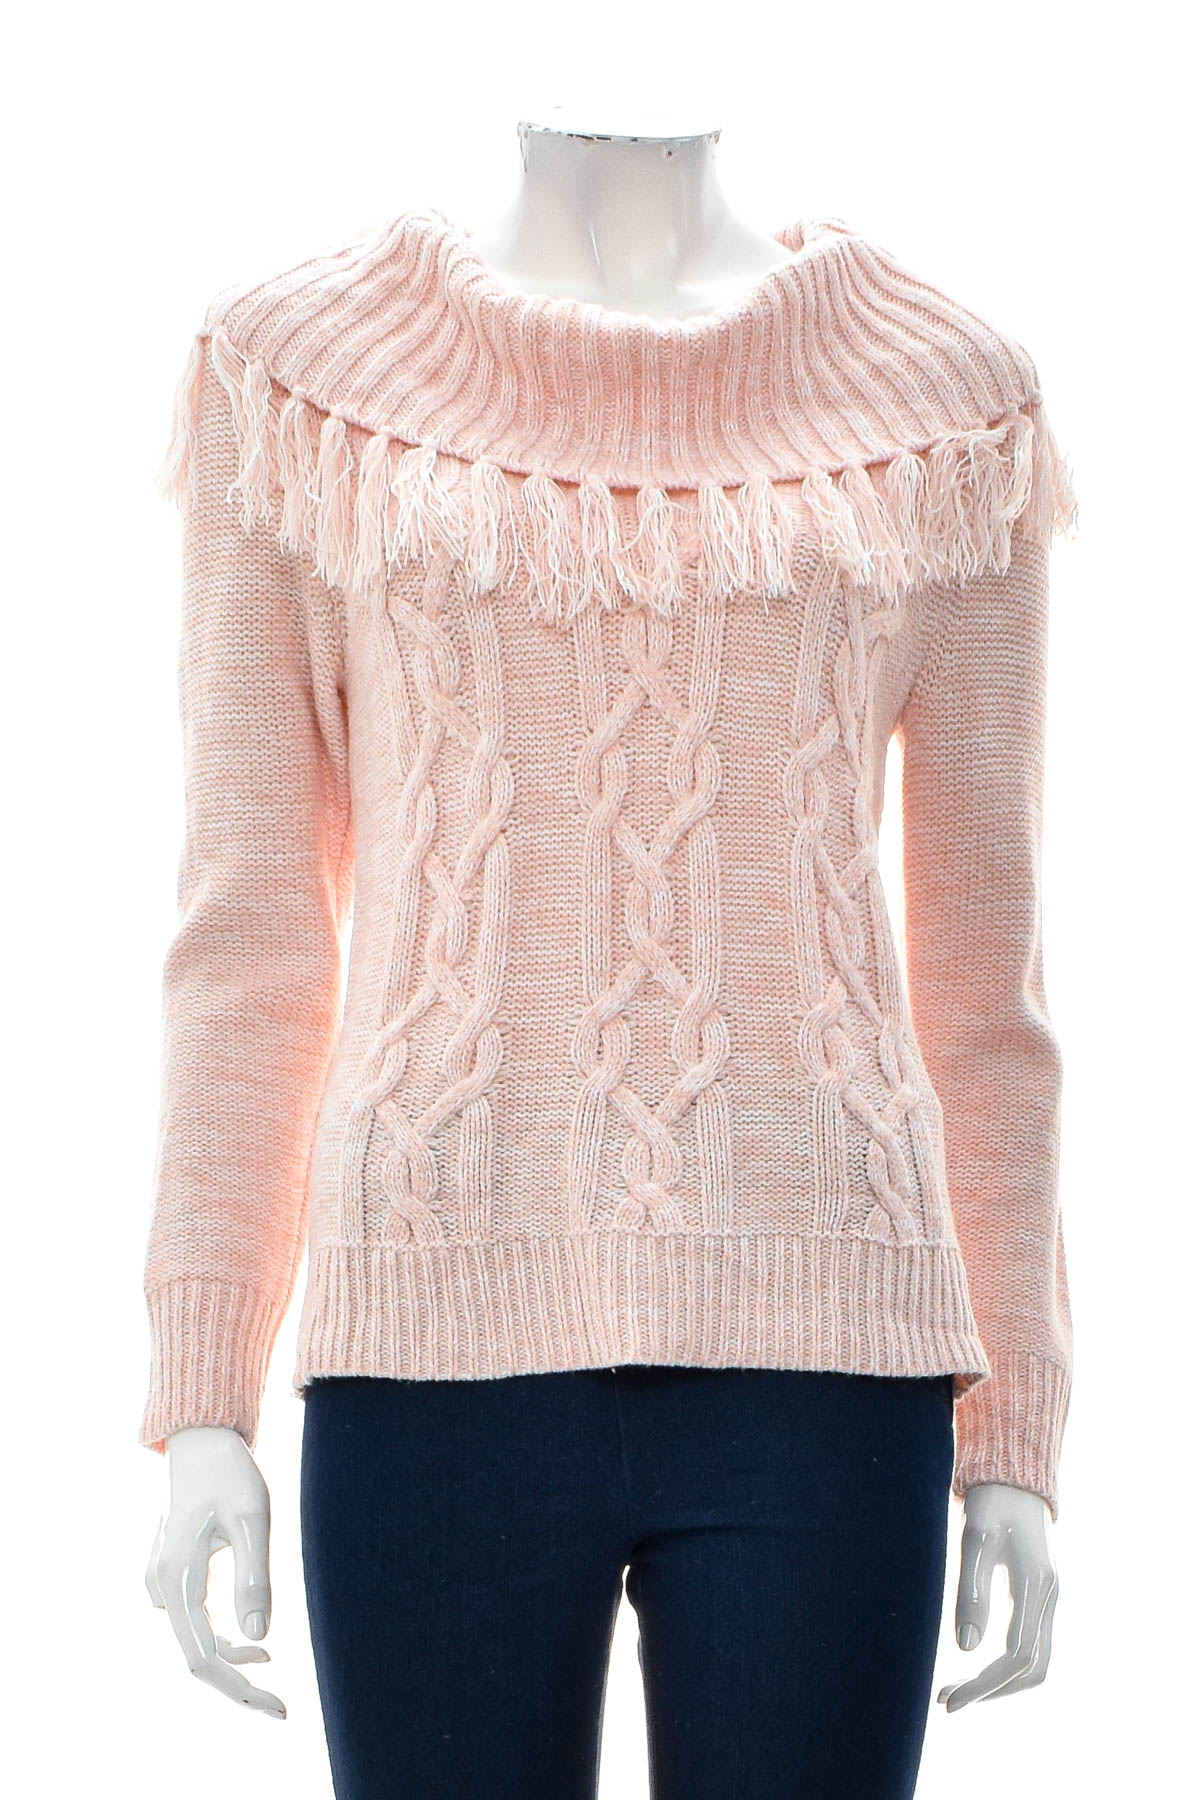 Women's sweater - Ruby Rd. petite - 0